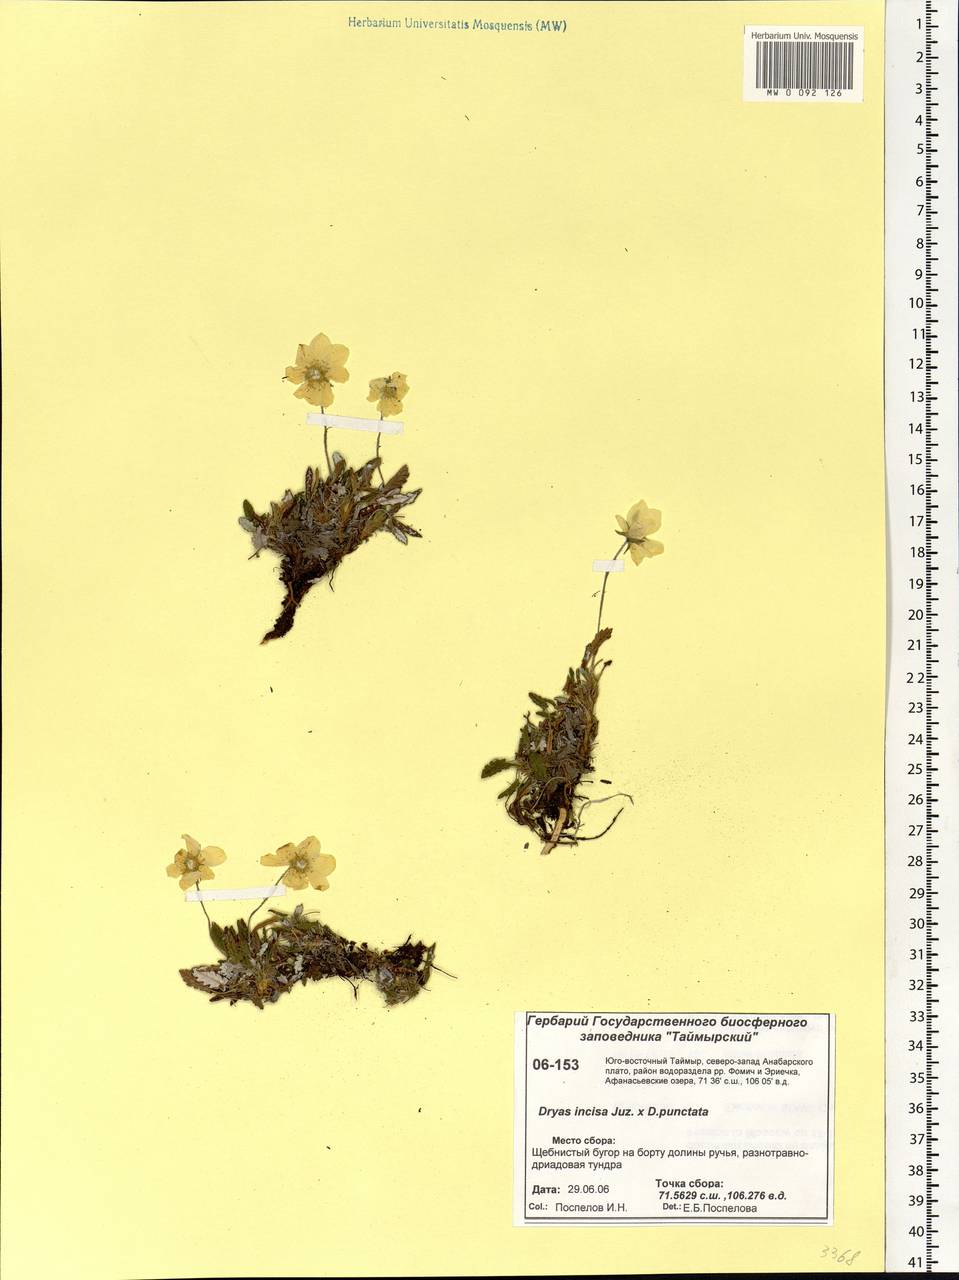 Dryas incisa × punctata  punctata, Сибирь, Центральная Сибирь (S3) (Россия)